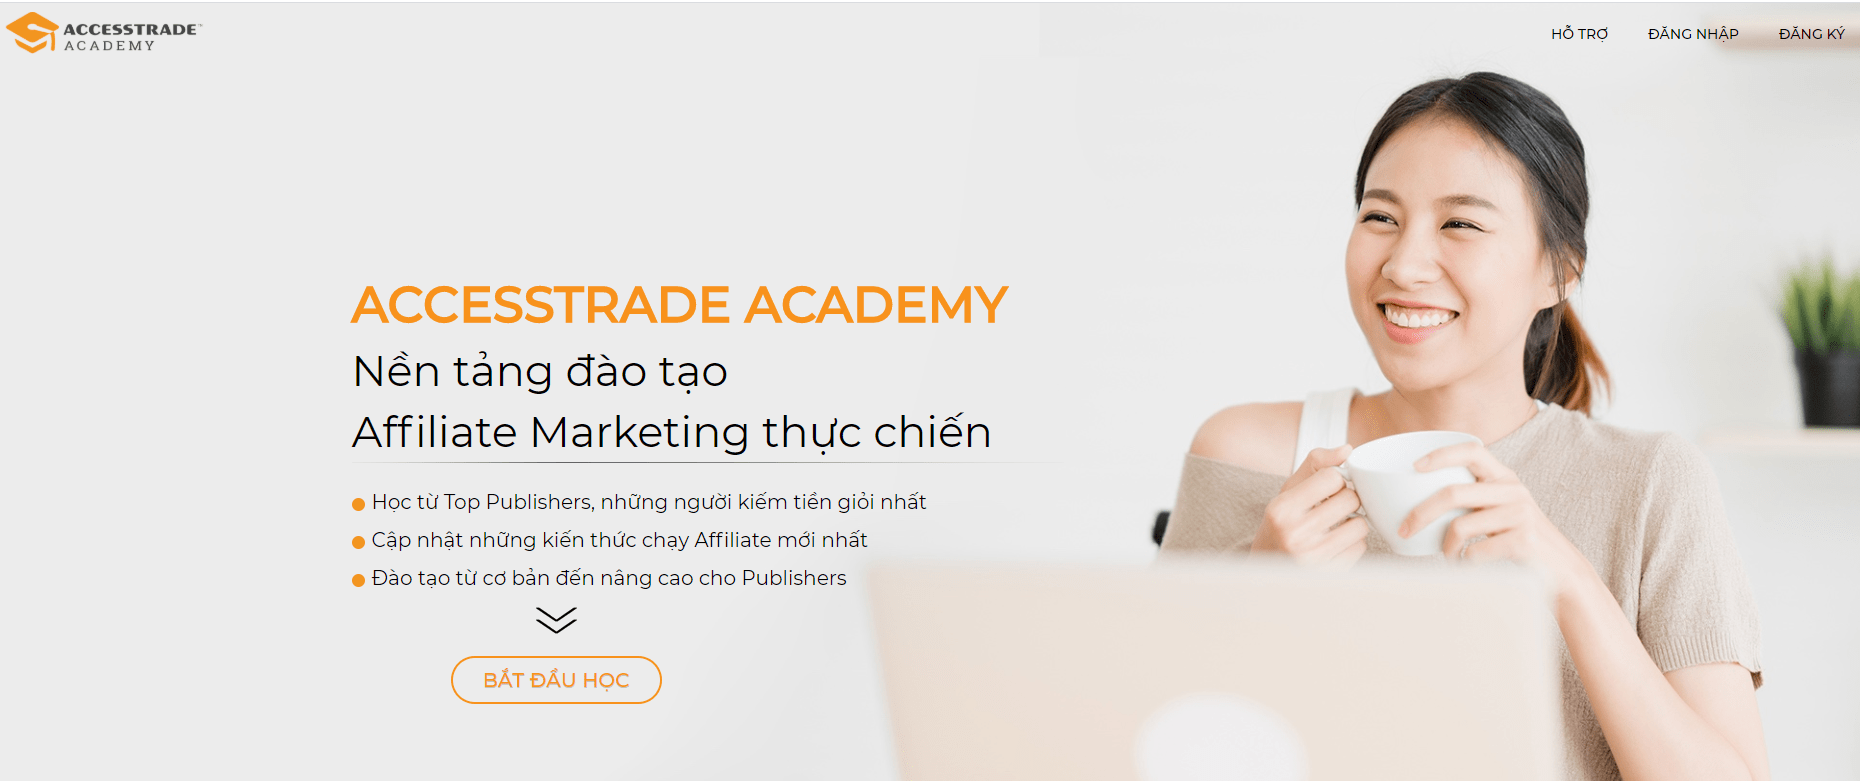 Accesstrade Academy nền tảng đào tạo affiliate marketing thực chiến